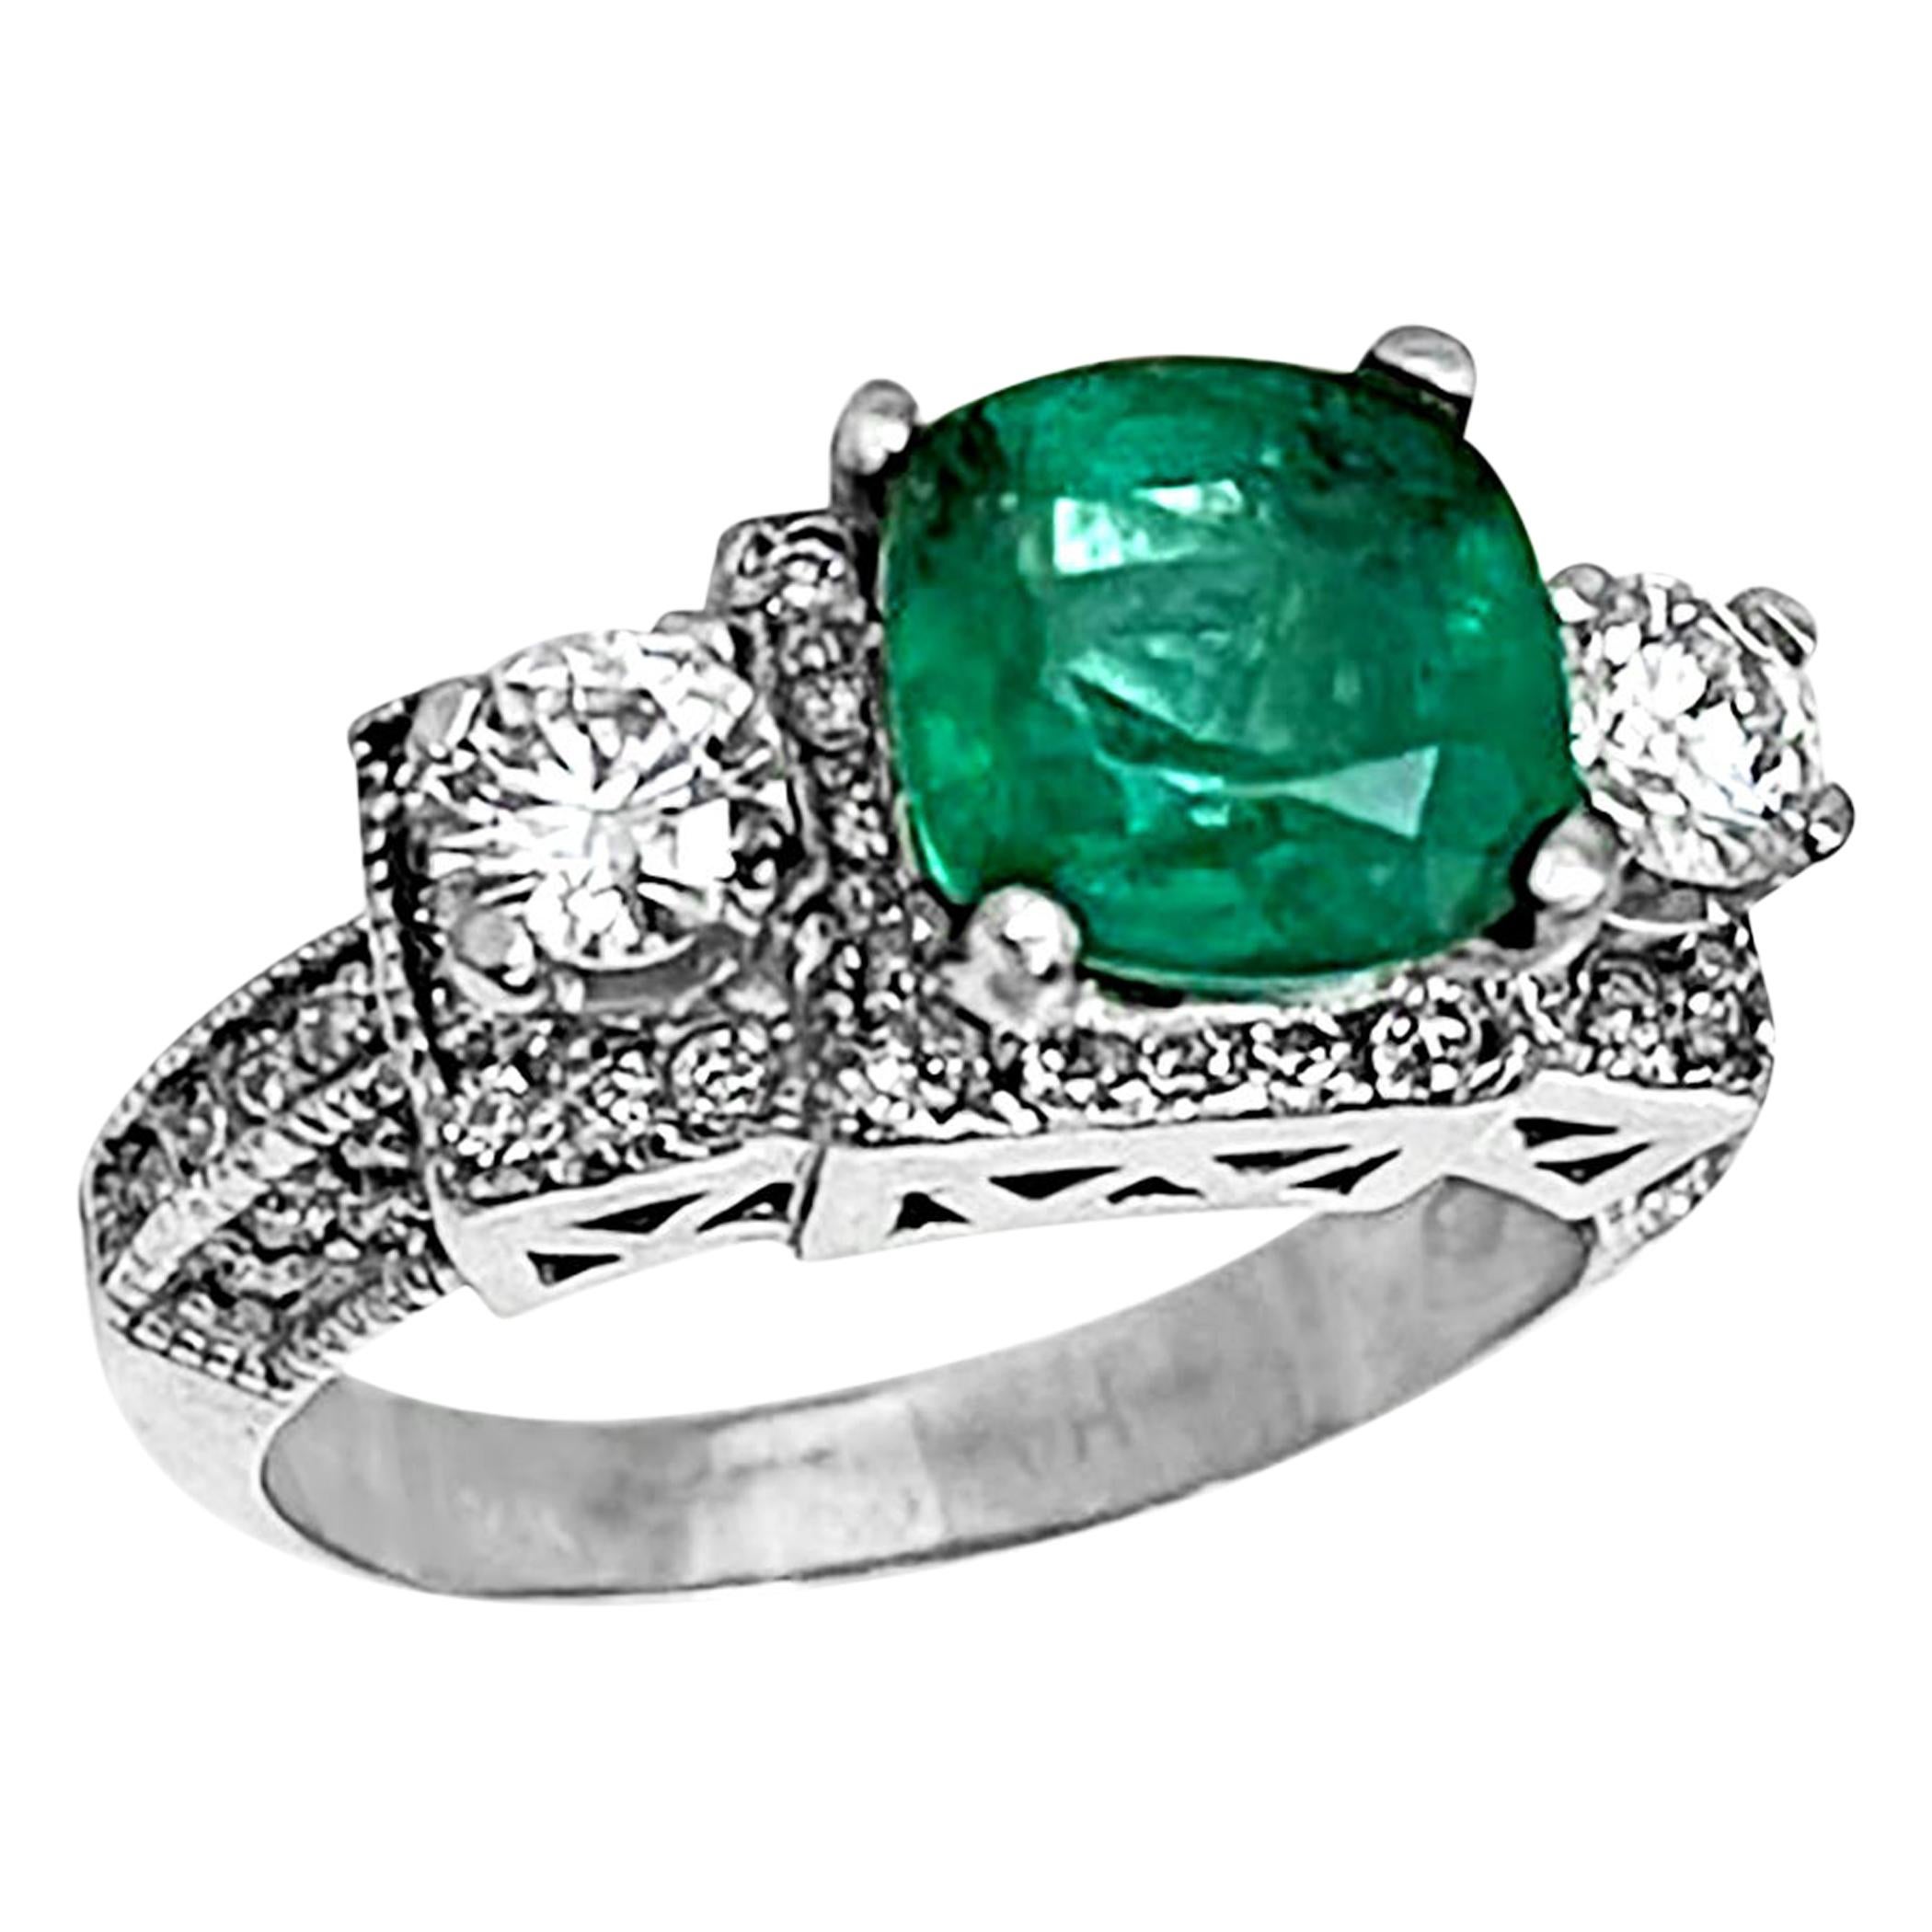 2 Carat Natural Cushion Cut Emerald & Diamond Ring 14 Karat White Gold